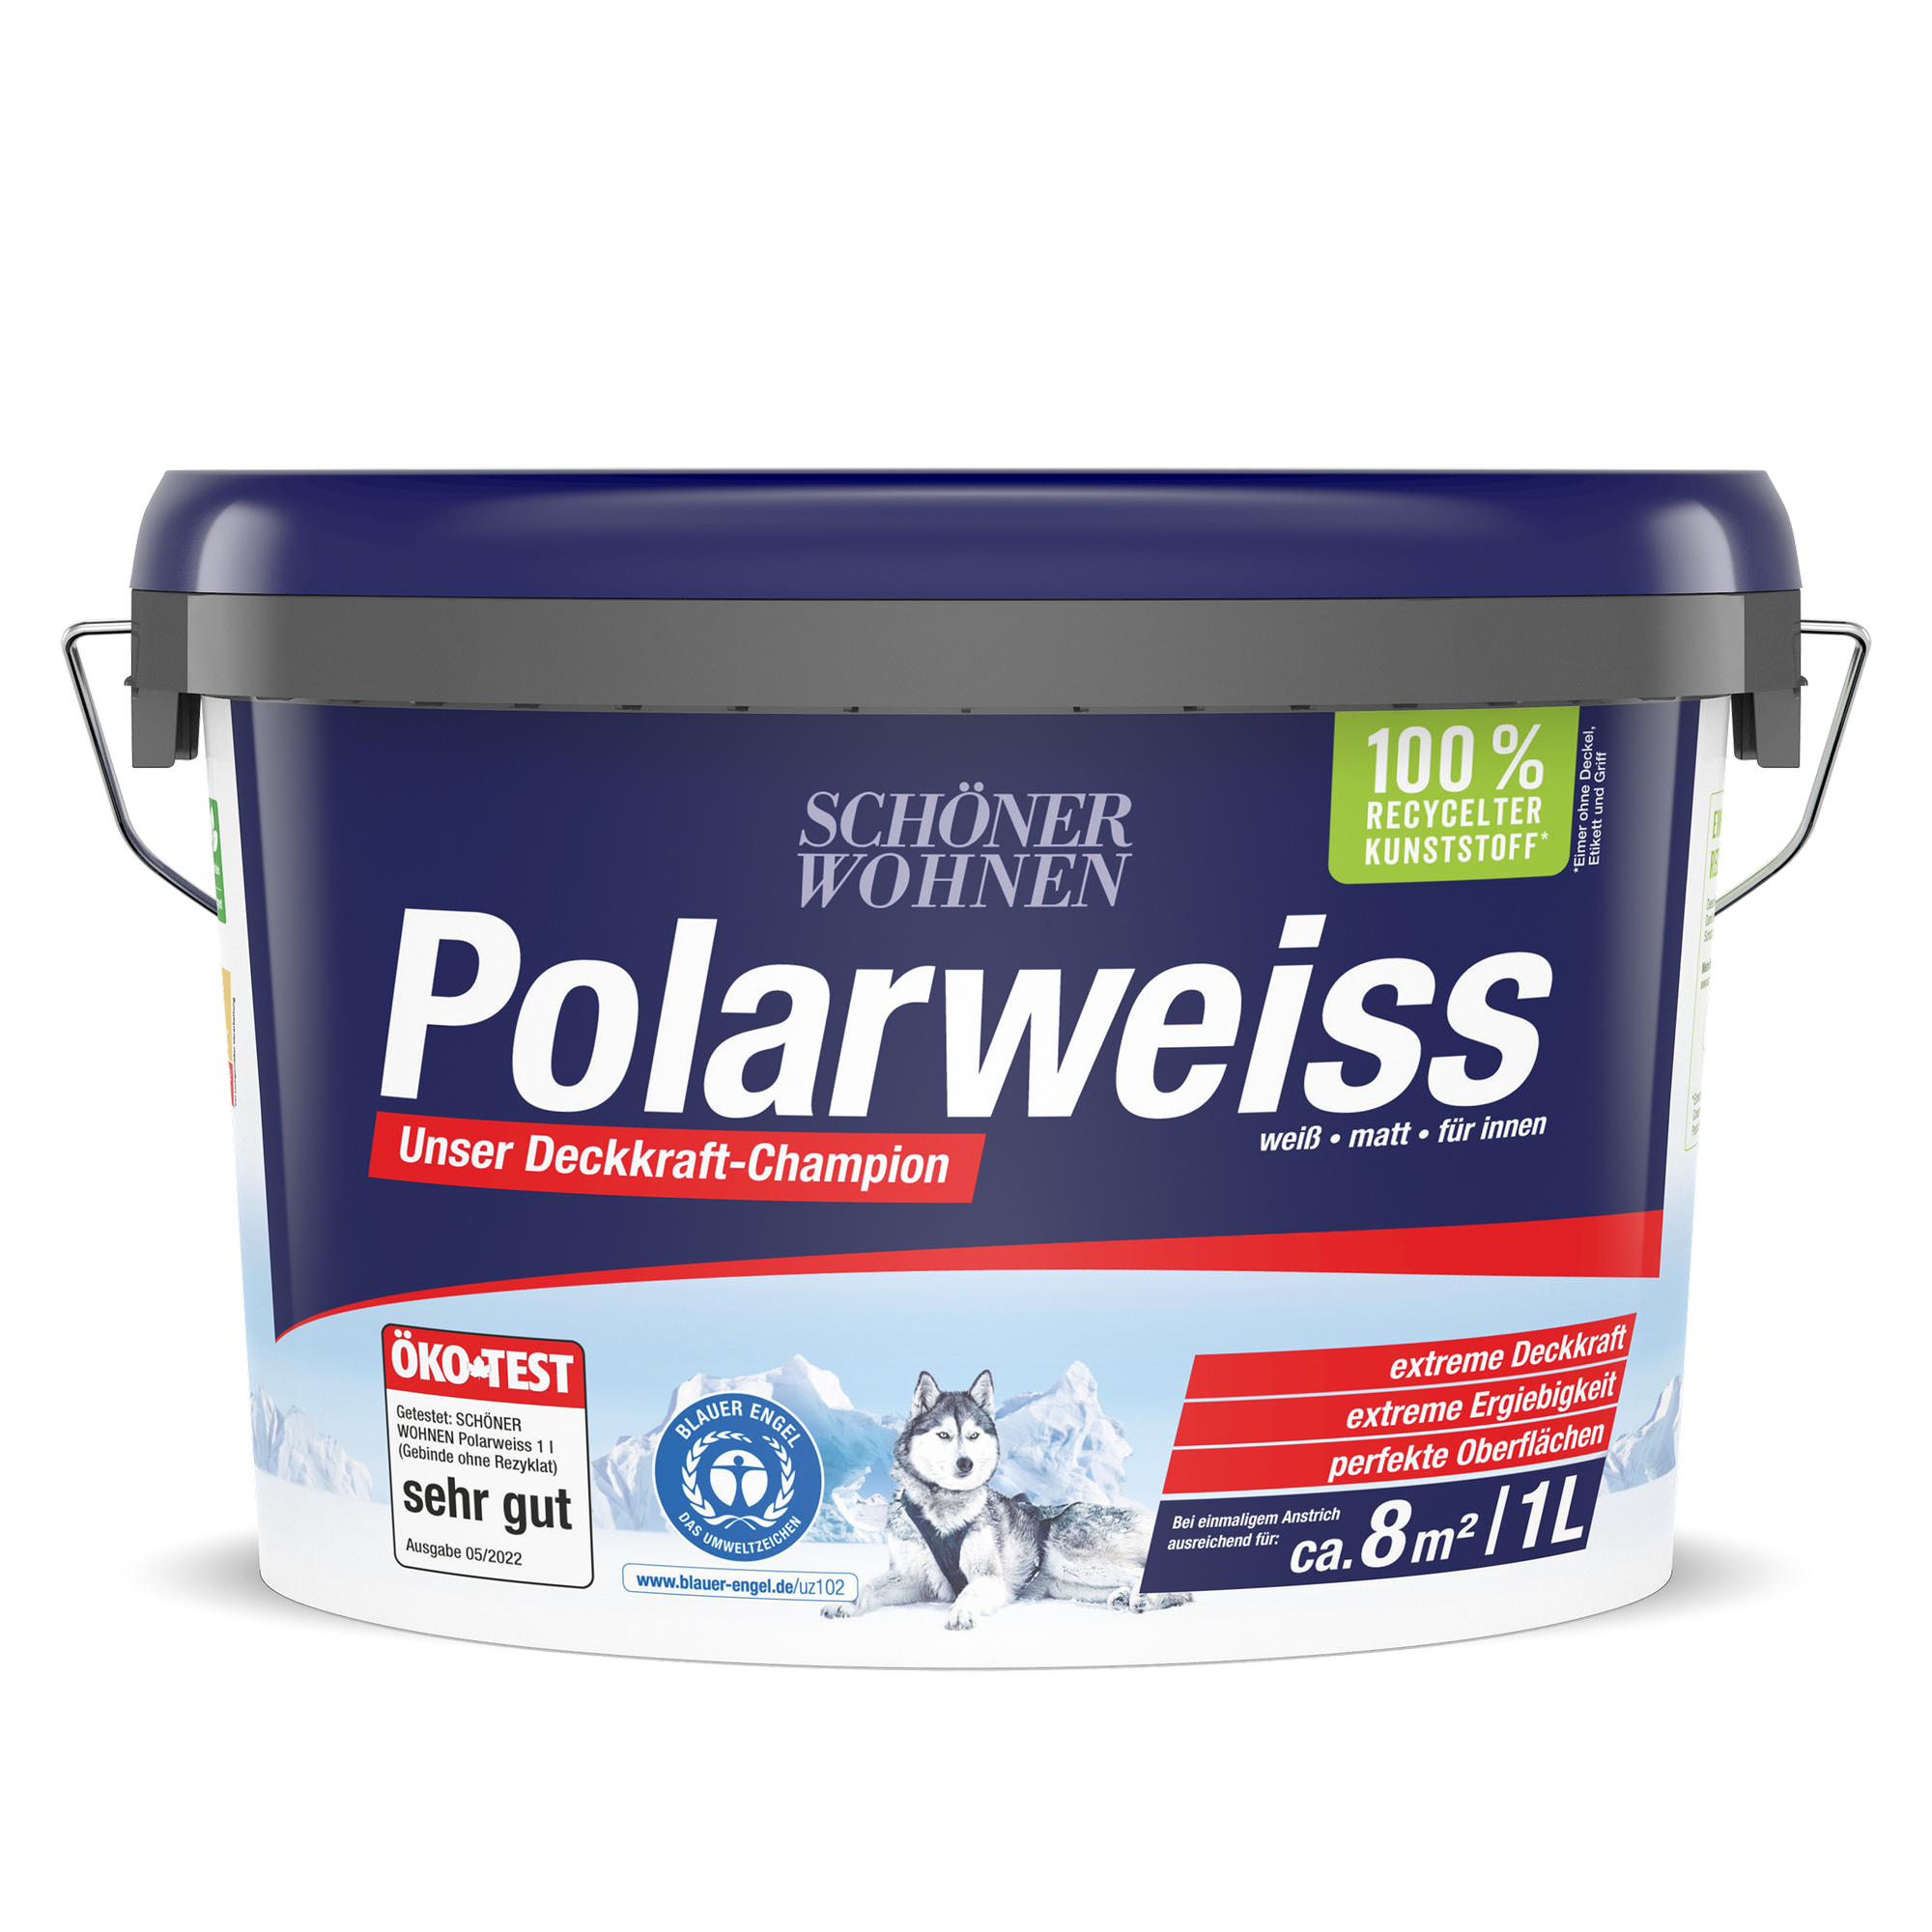 Wandfarbe 'Polarweiß' matt 1 l + product picture